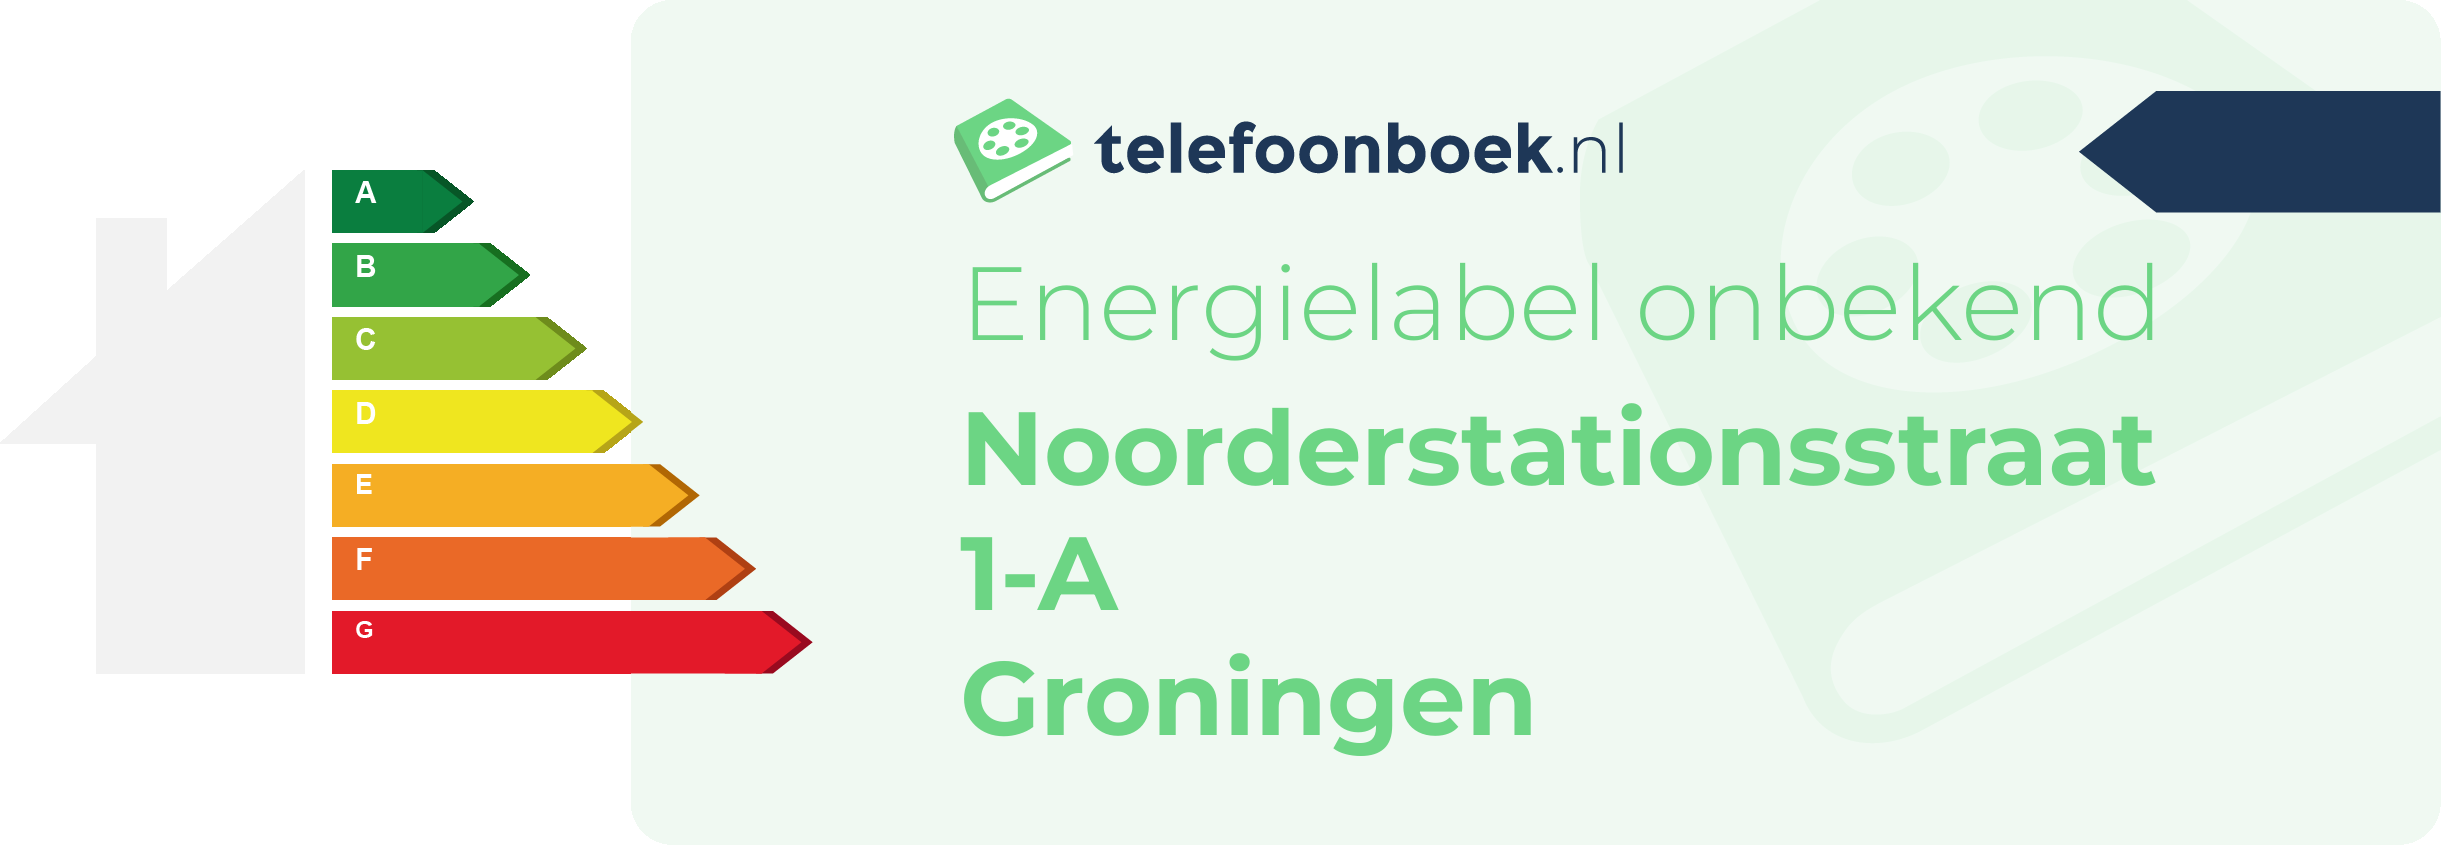 Energielabel Noorderstationsstraat 1-A Groningen